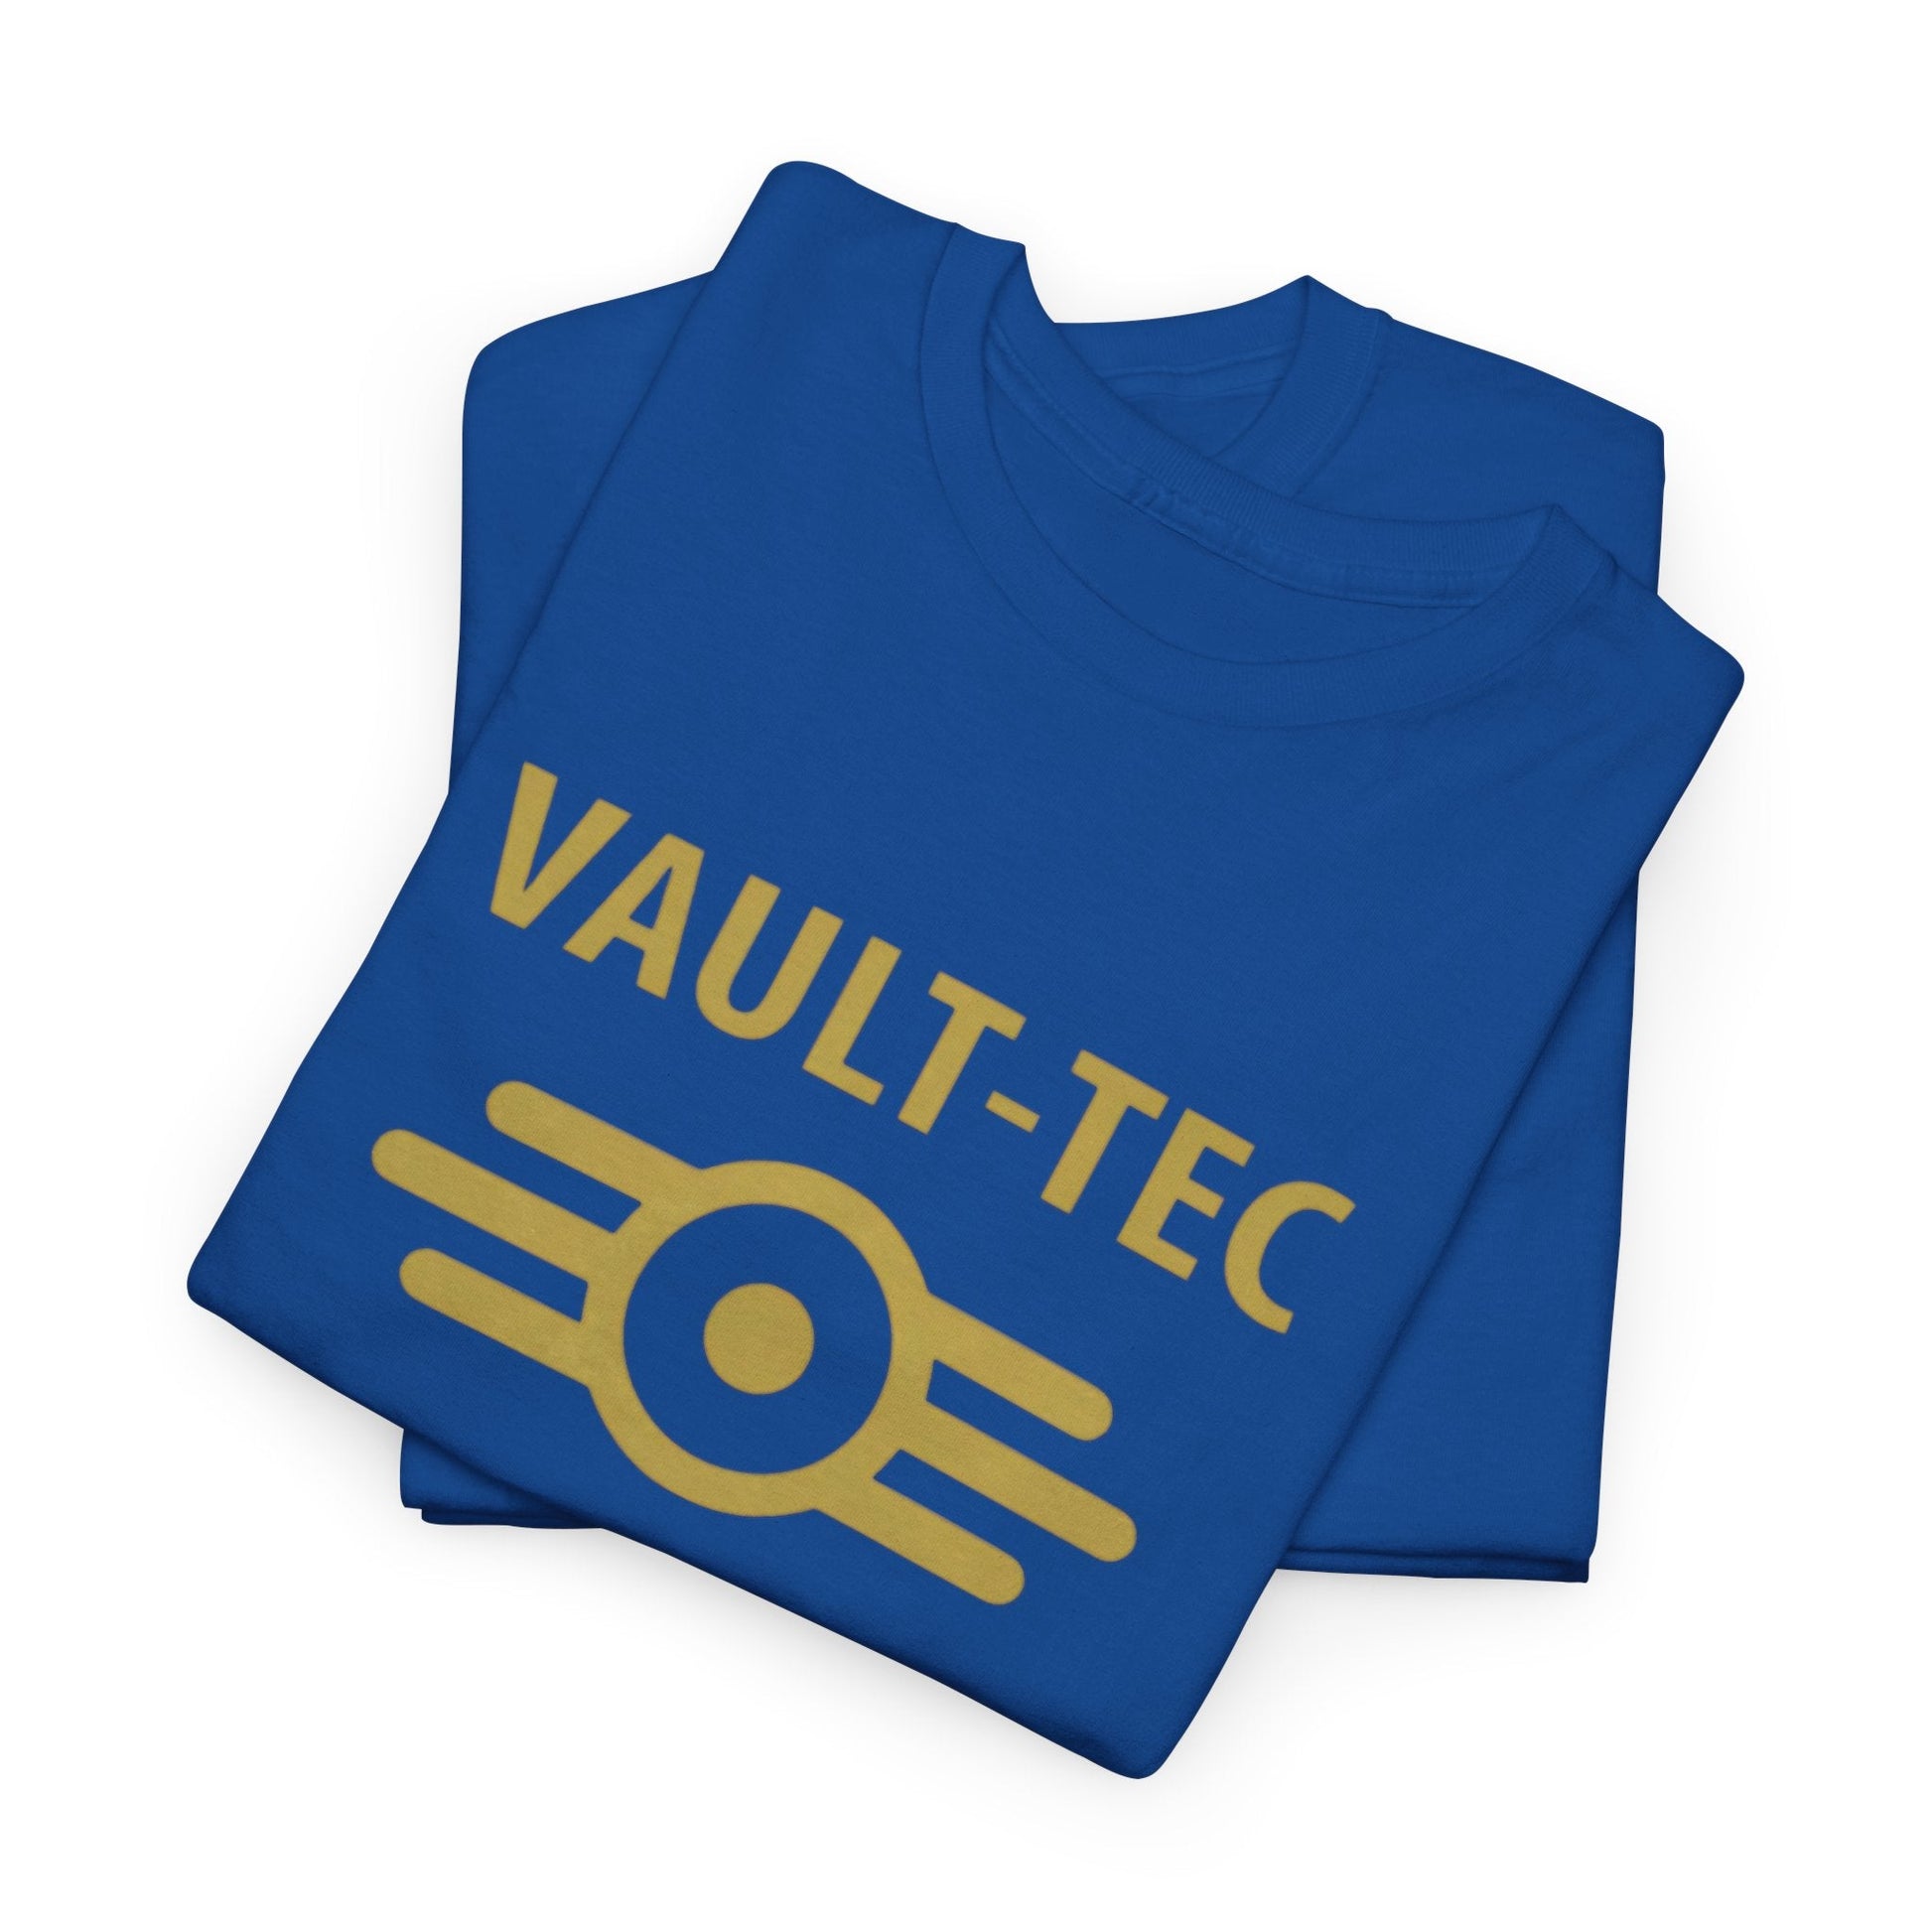 Vault-Tec logo T-Shirt - RetroTeeShop